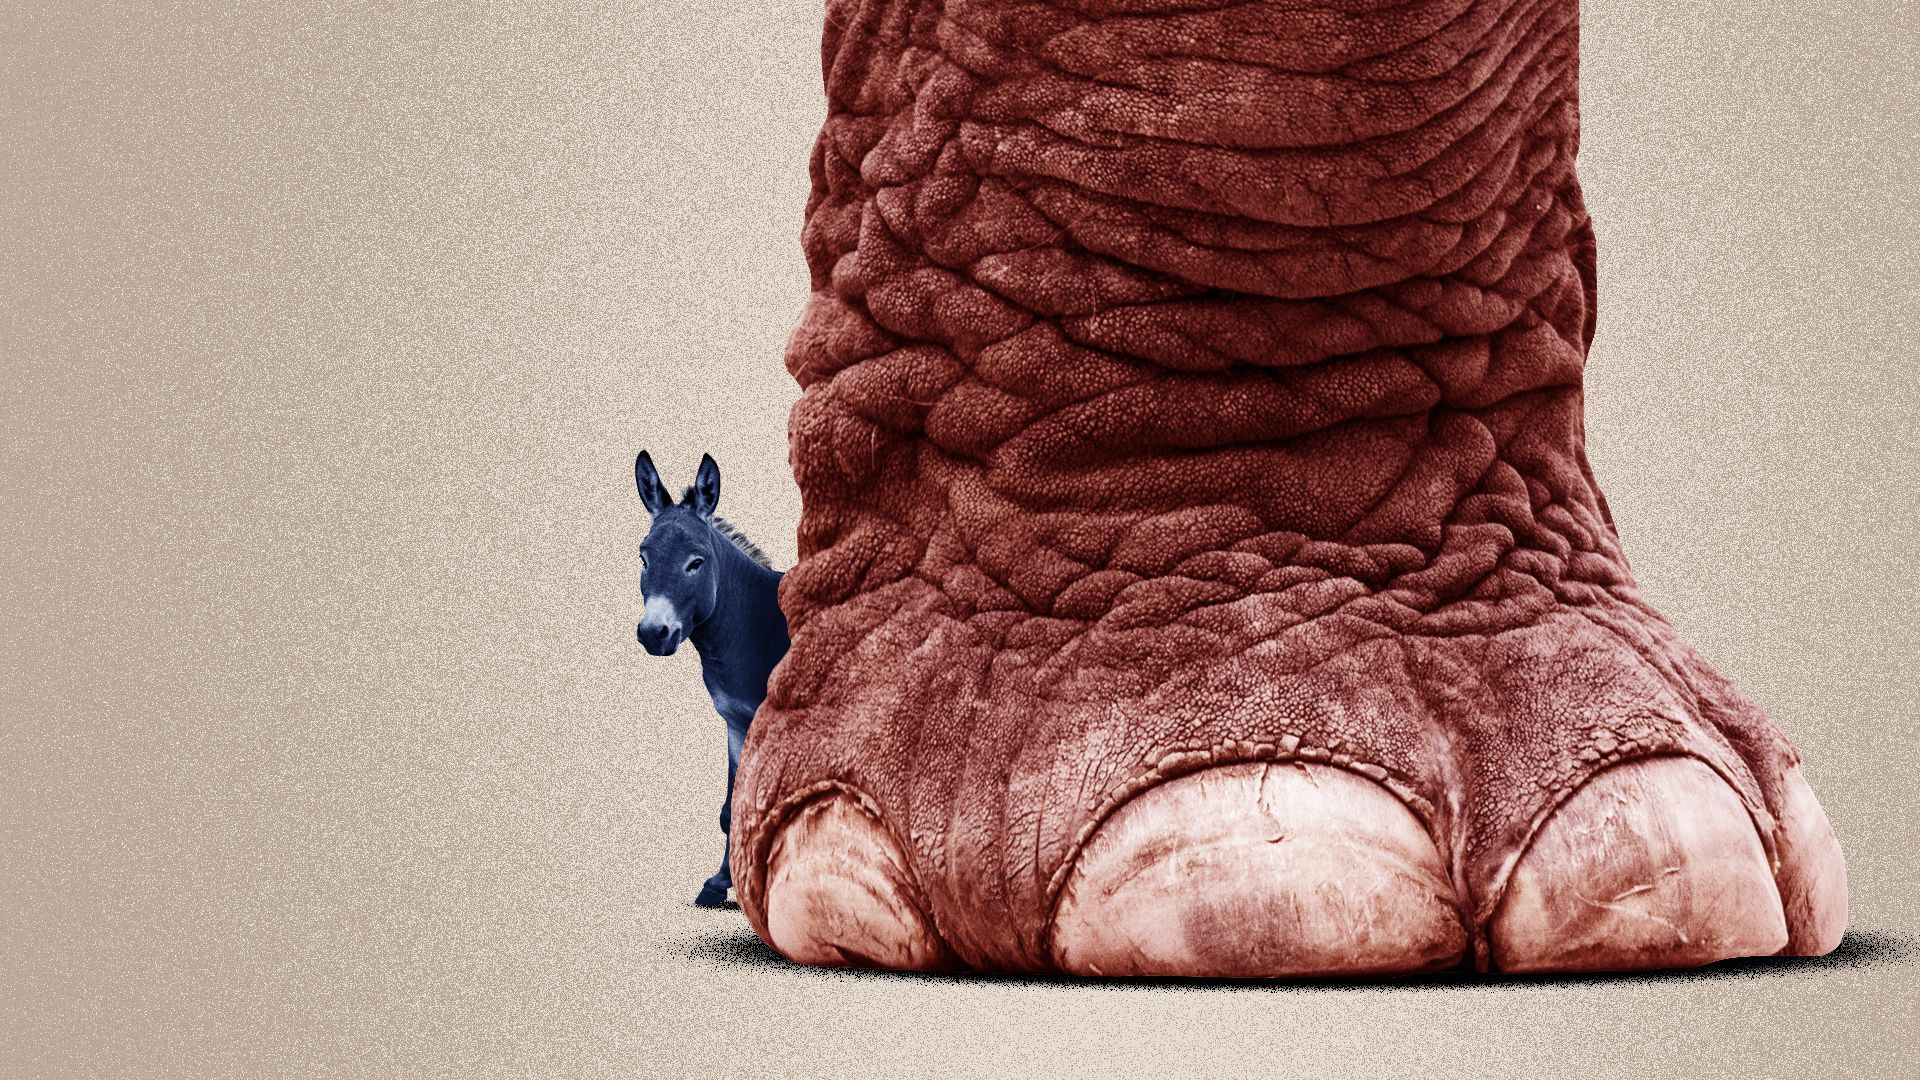 Illustration of donkey hiding behind elephant foot